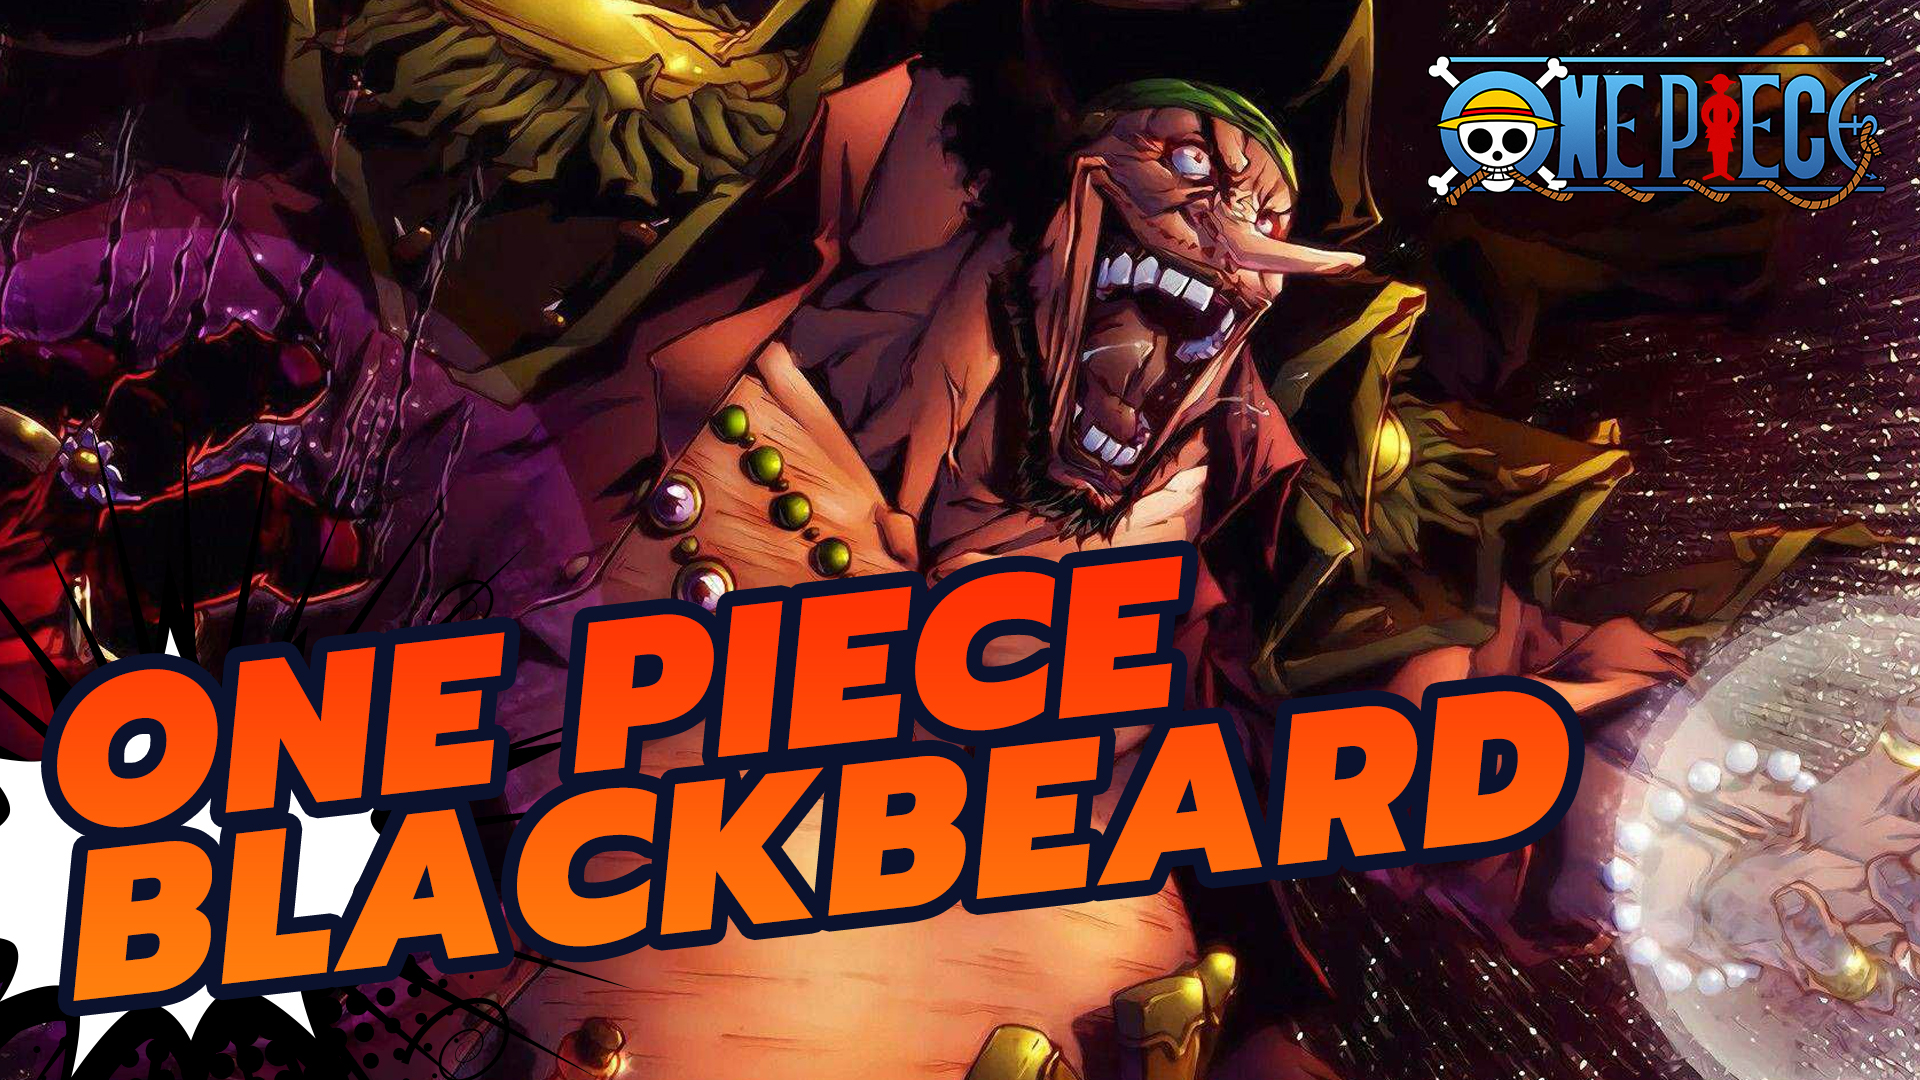 Blackbeard Kid R R-026 One Piece Anime TCG CCG Anime Card | eBay